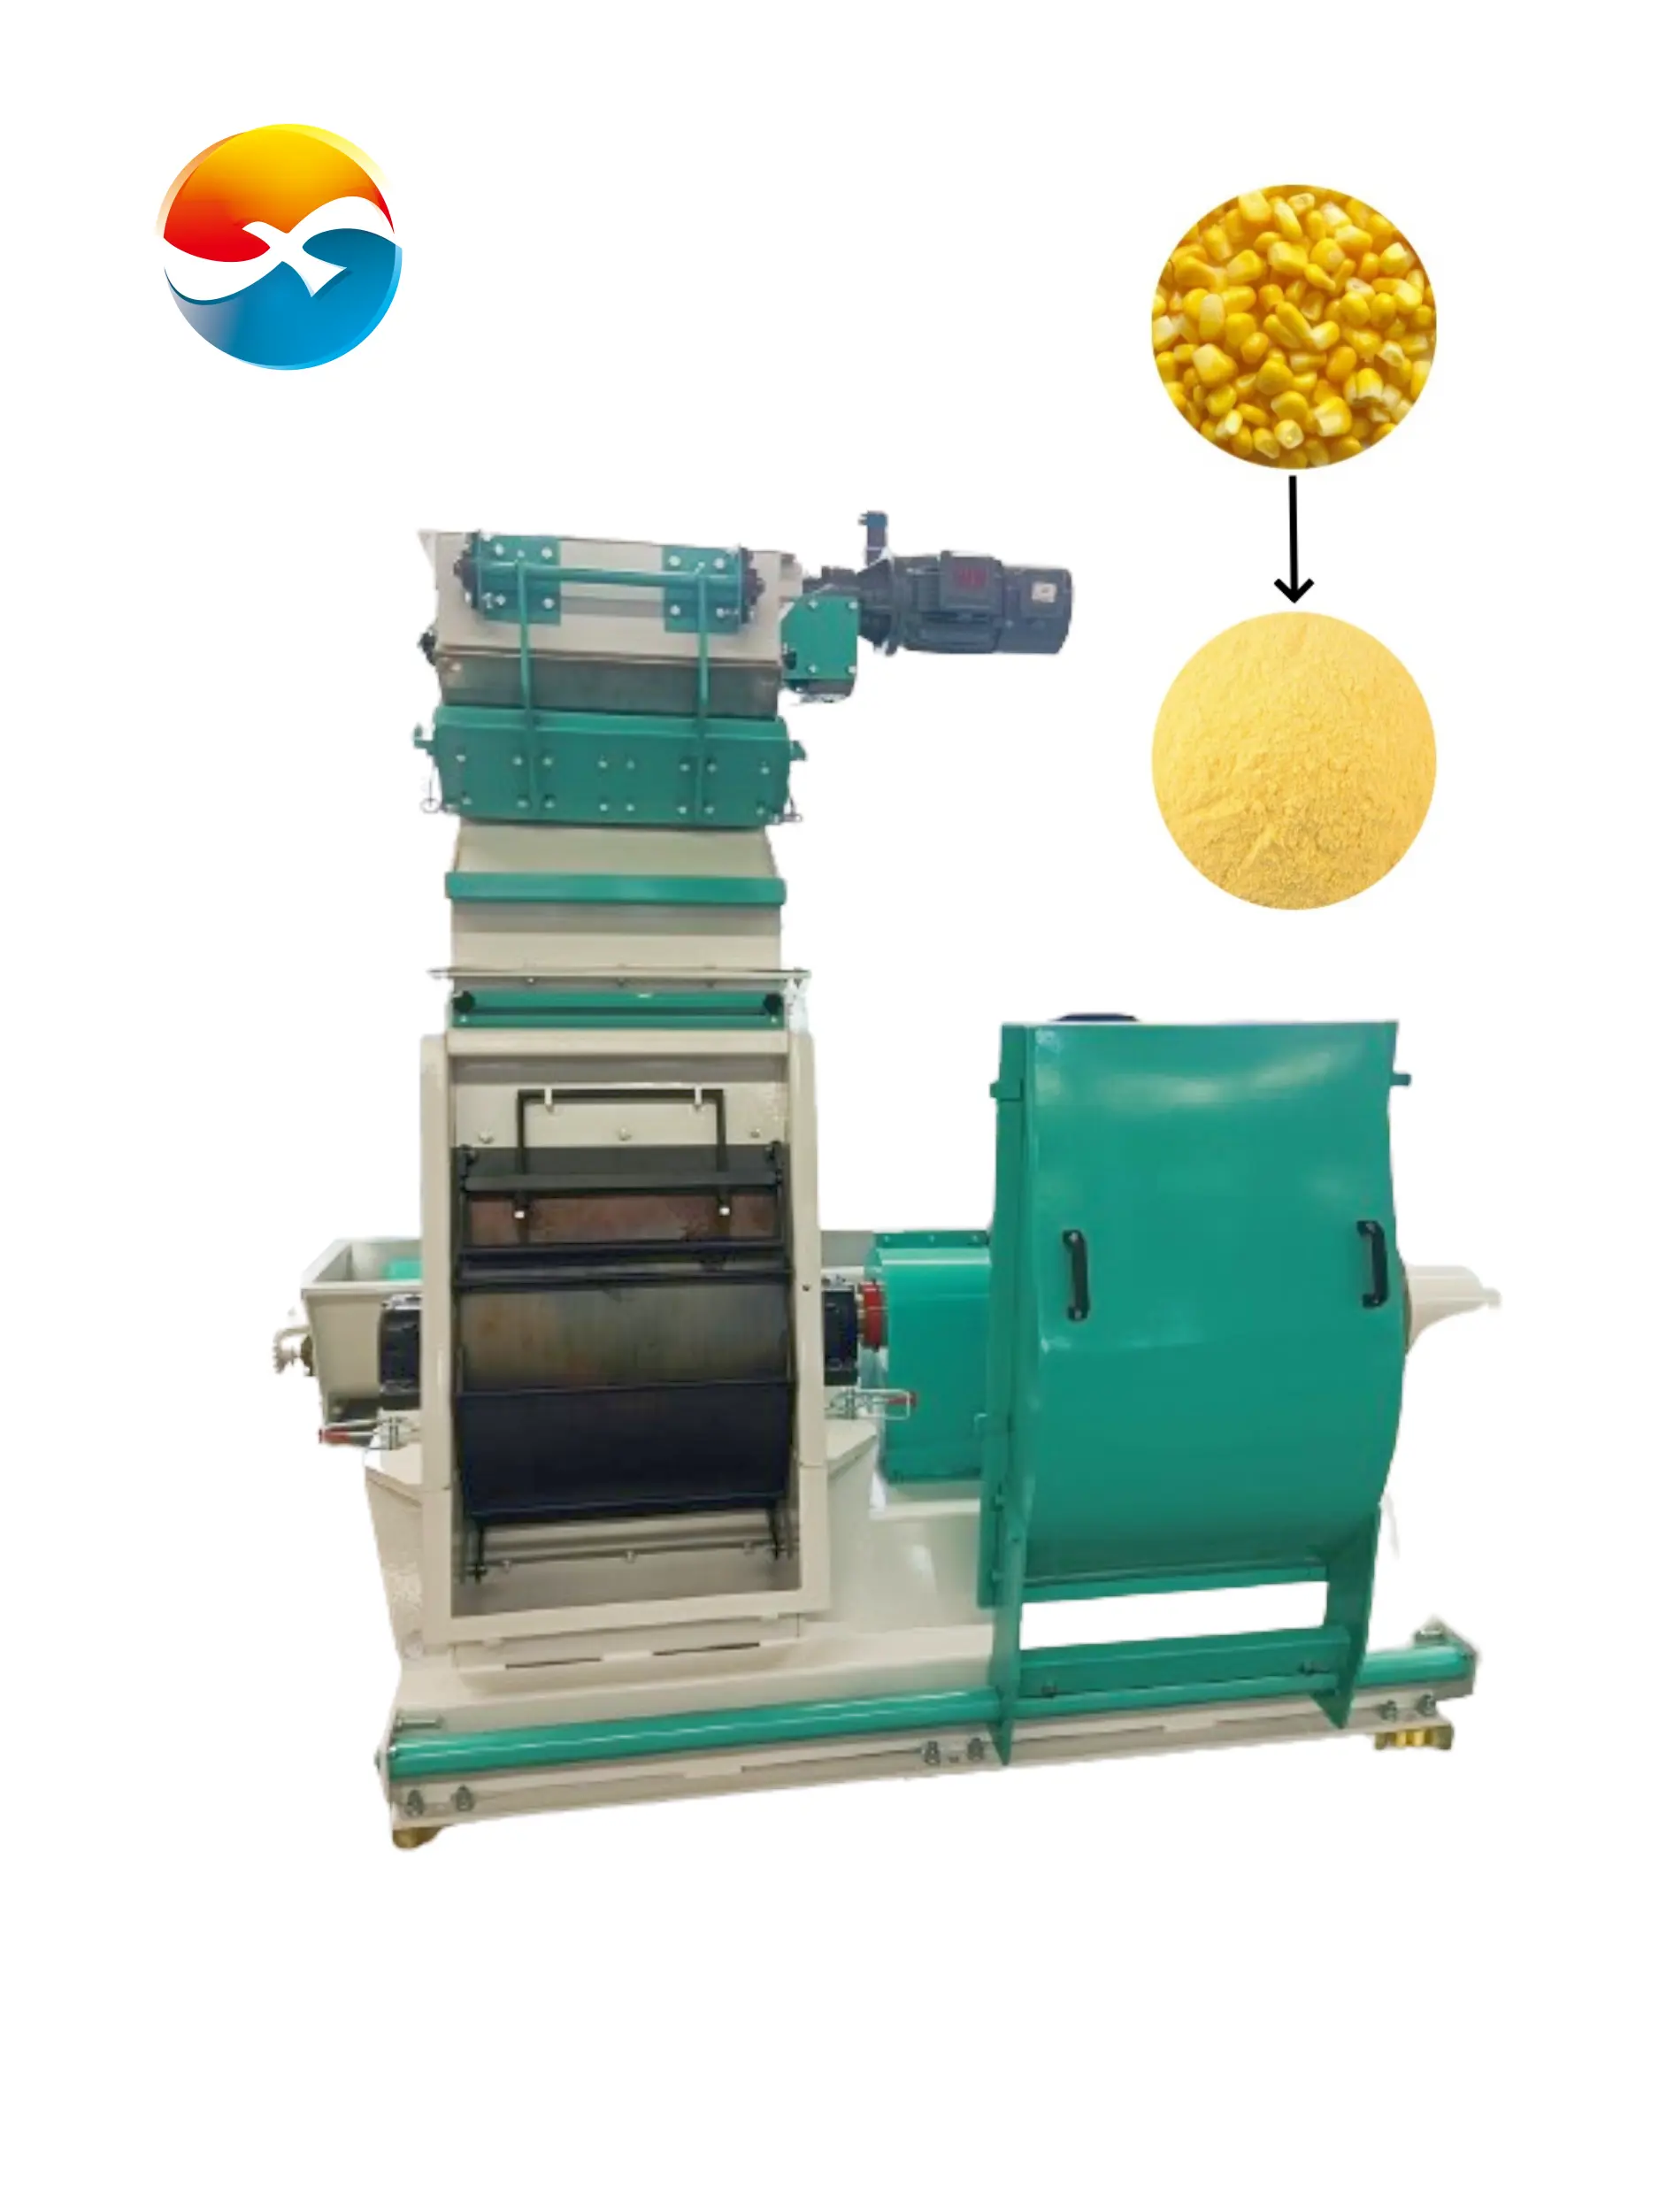 Marka yeni fabrika doğrudan satış kaliteli mısır taşlama makinesi mısır değirmeni makinesi otomatik mısır değirmeni değirmen